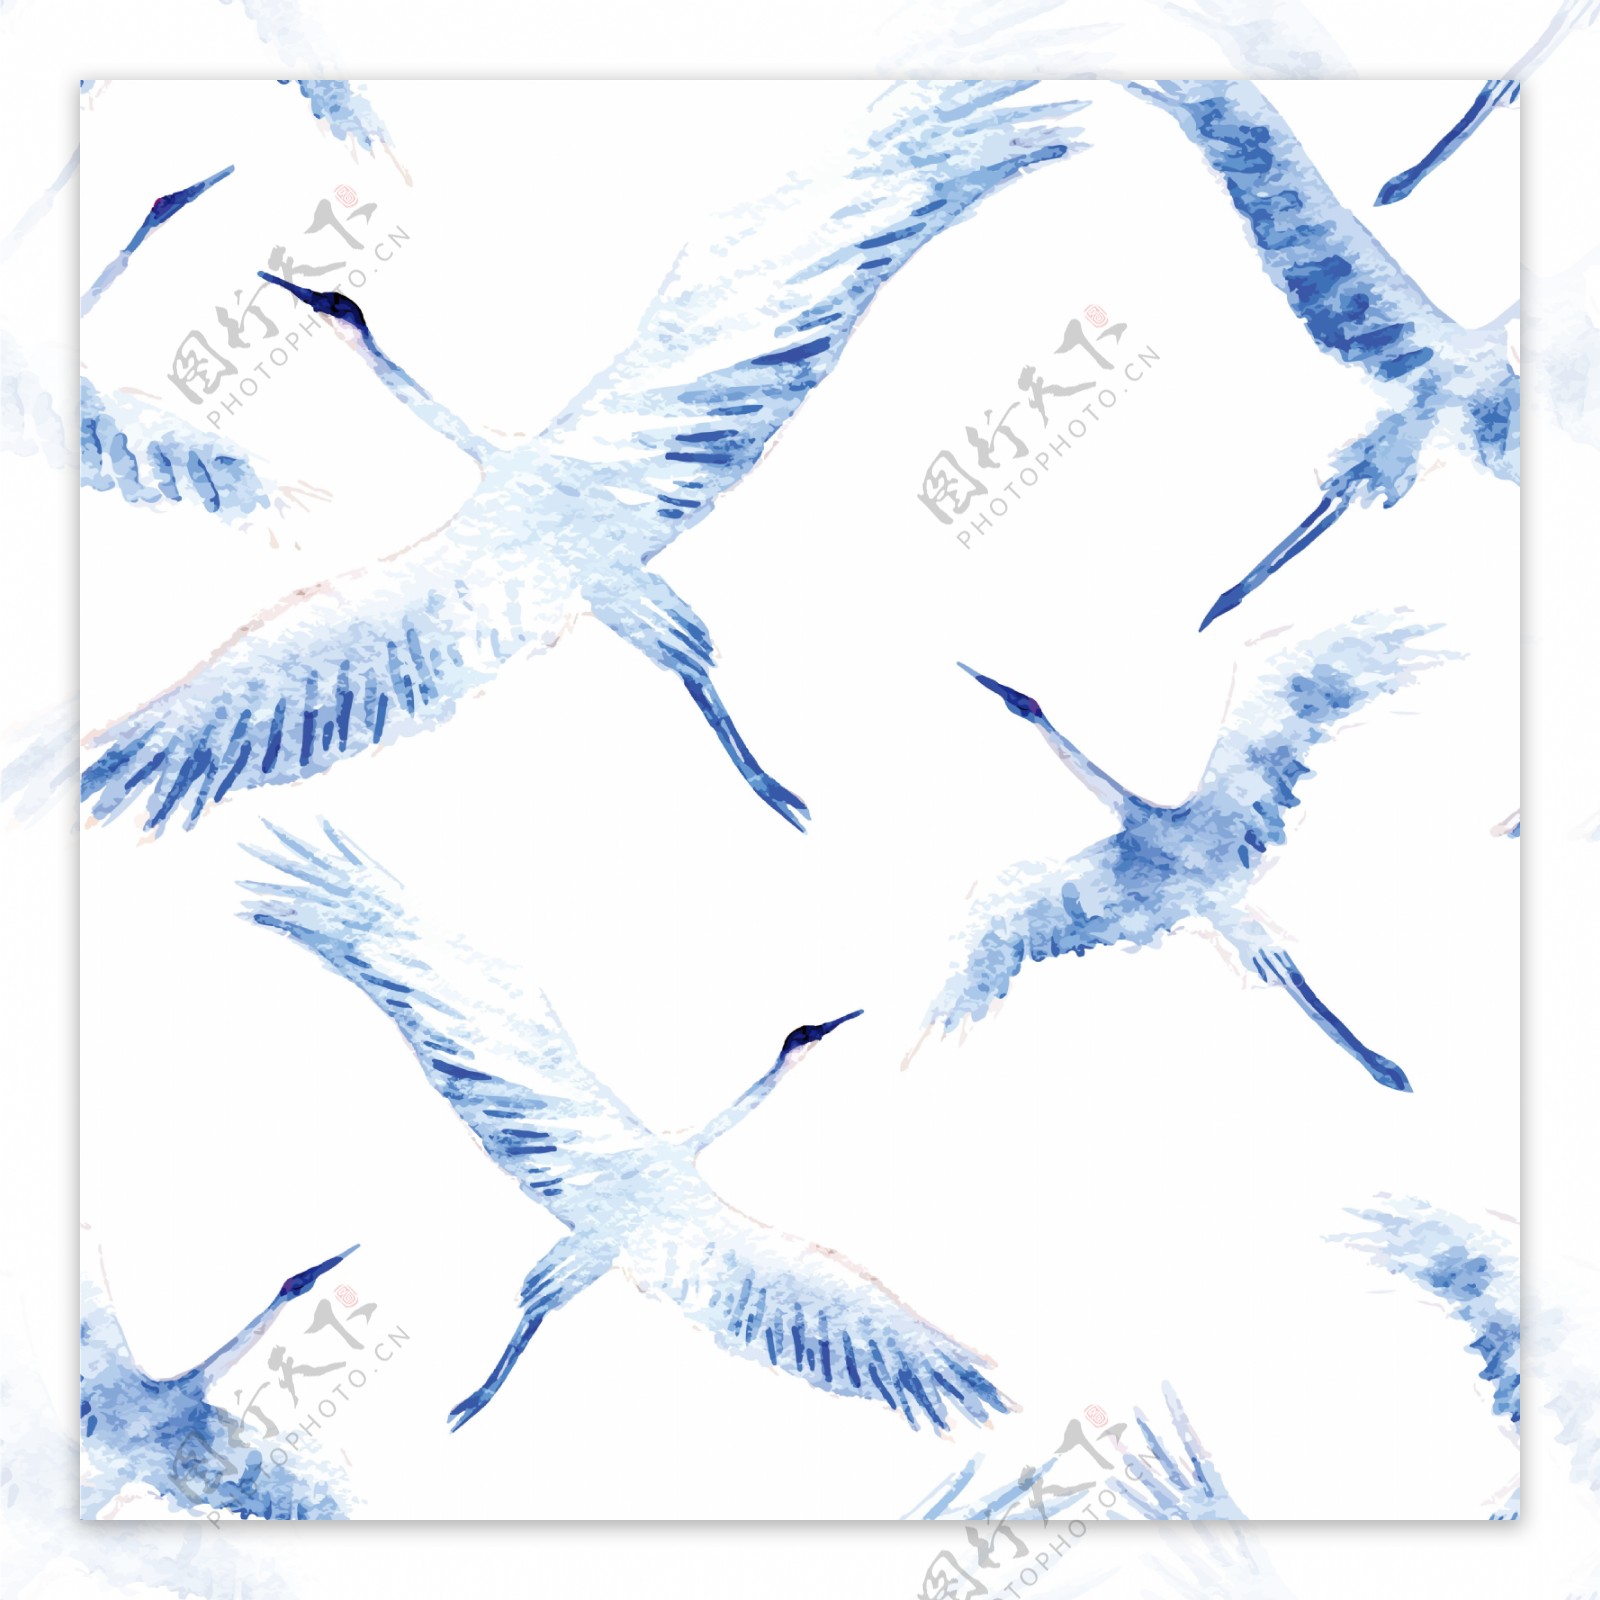 高雅时尚蓝鹤壁纸图案装饰设计